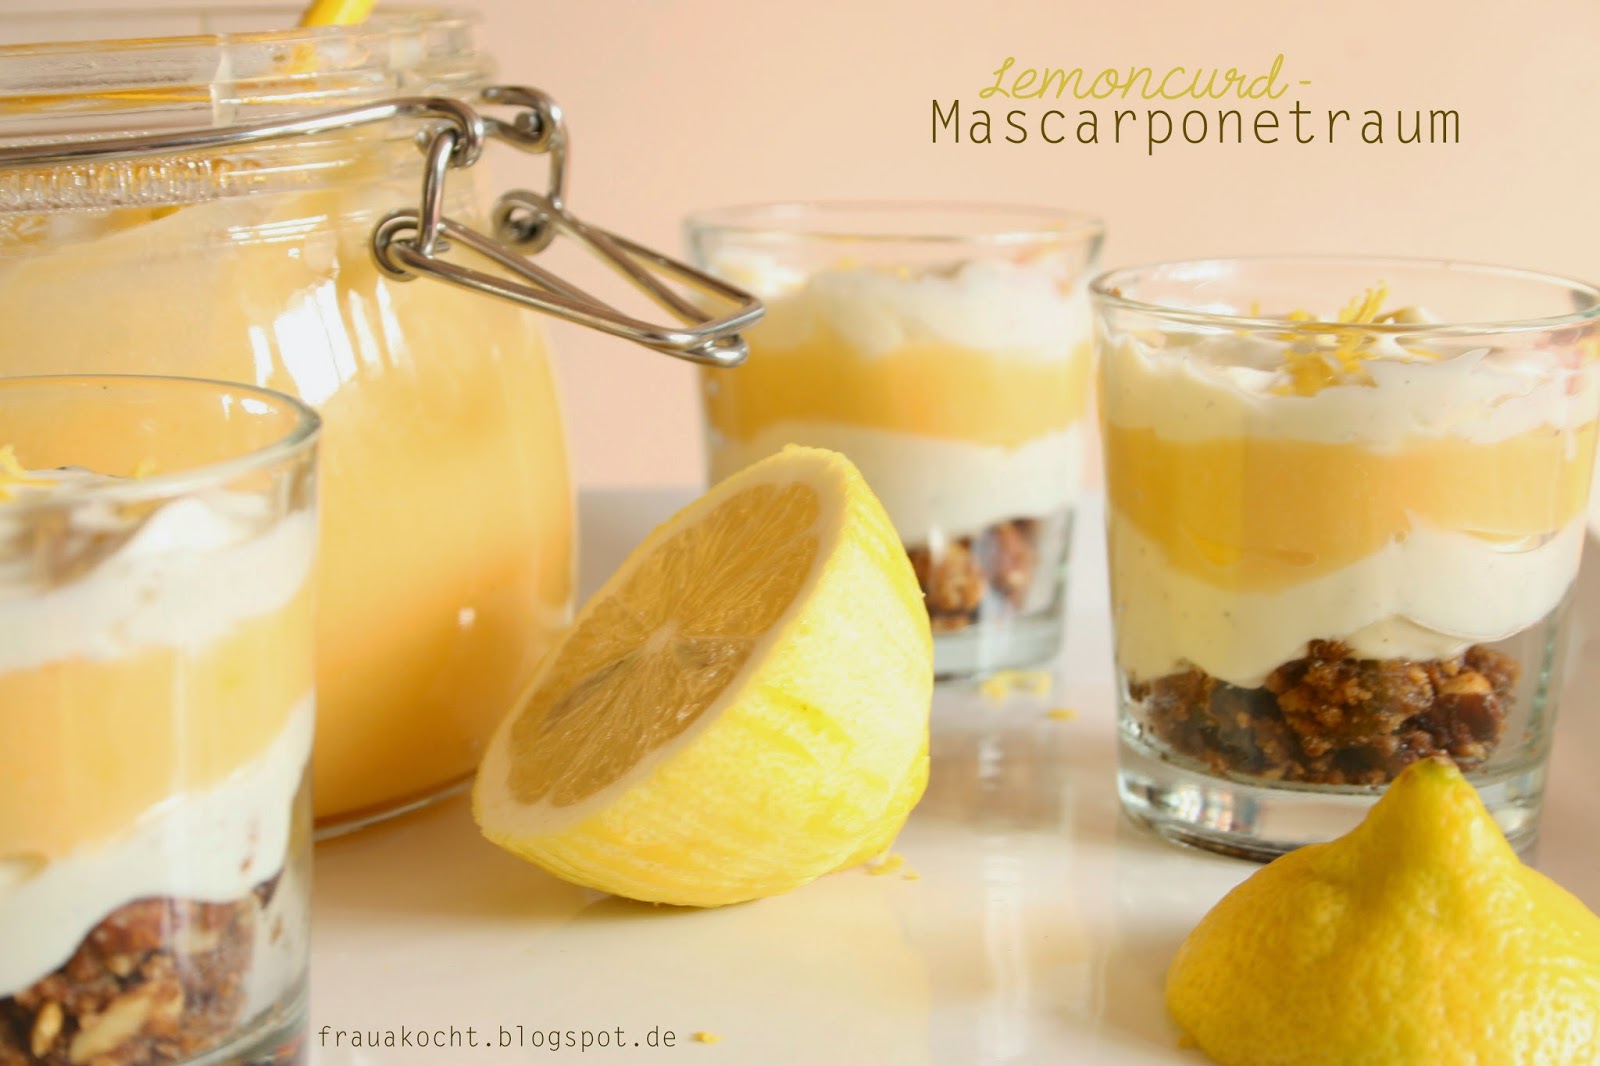 Frau A. kocht : Lemoncurd – Mascarpone - Träumchen auf Knusperchrunch